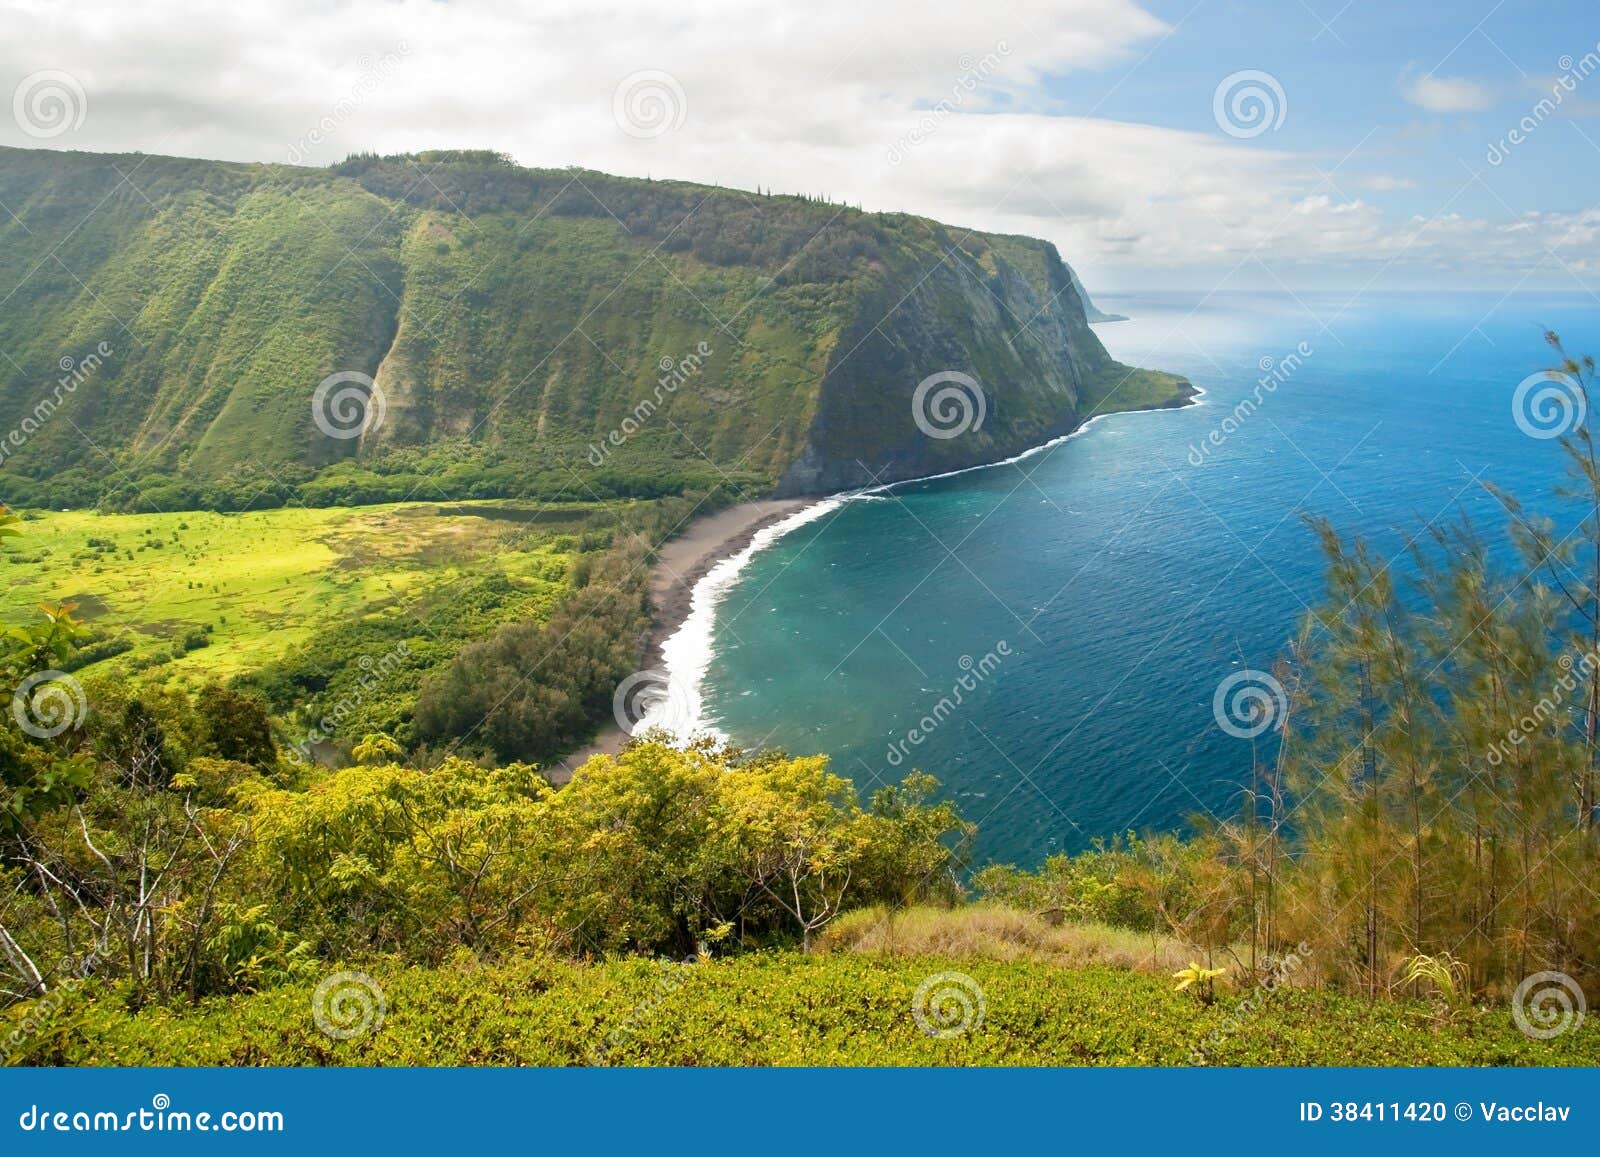 waipio valley lookout on hawaii big island